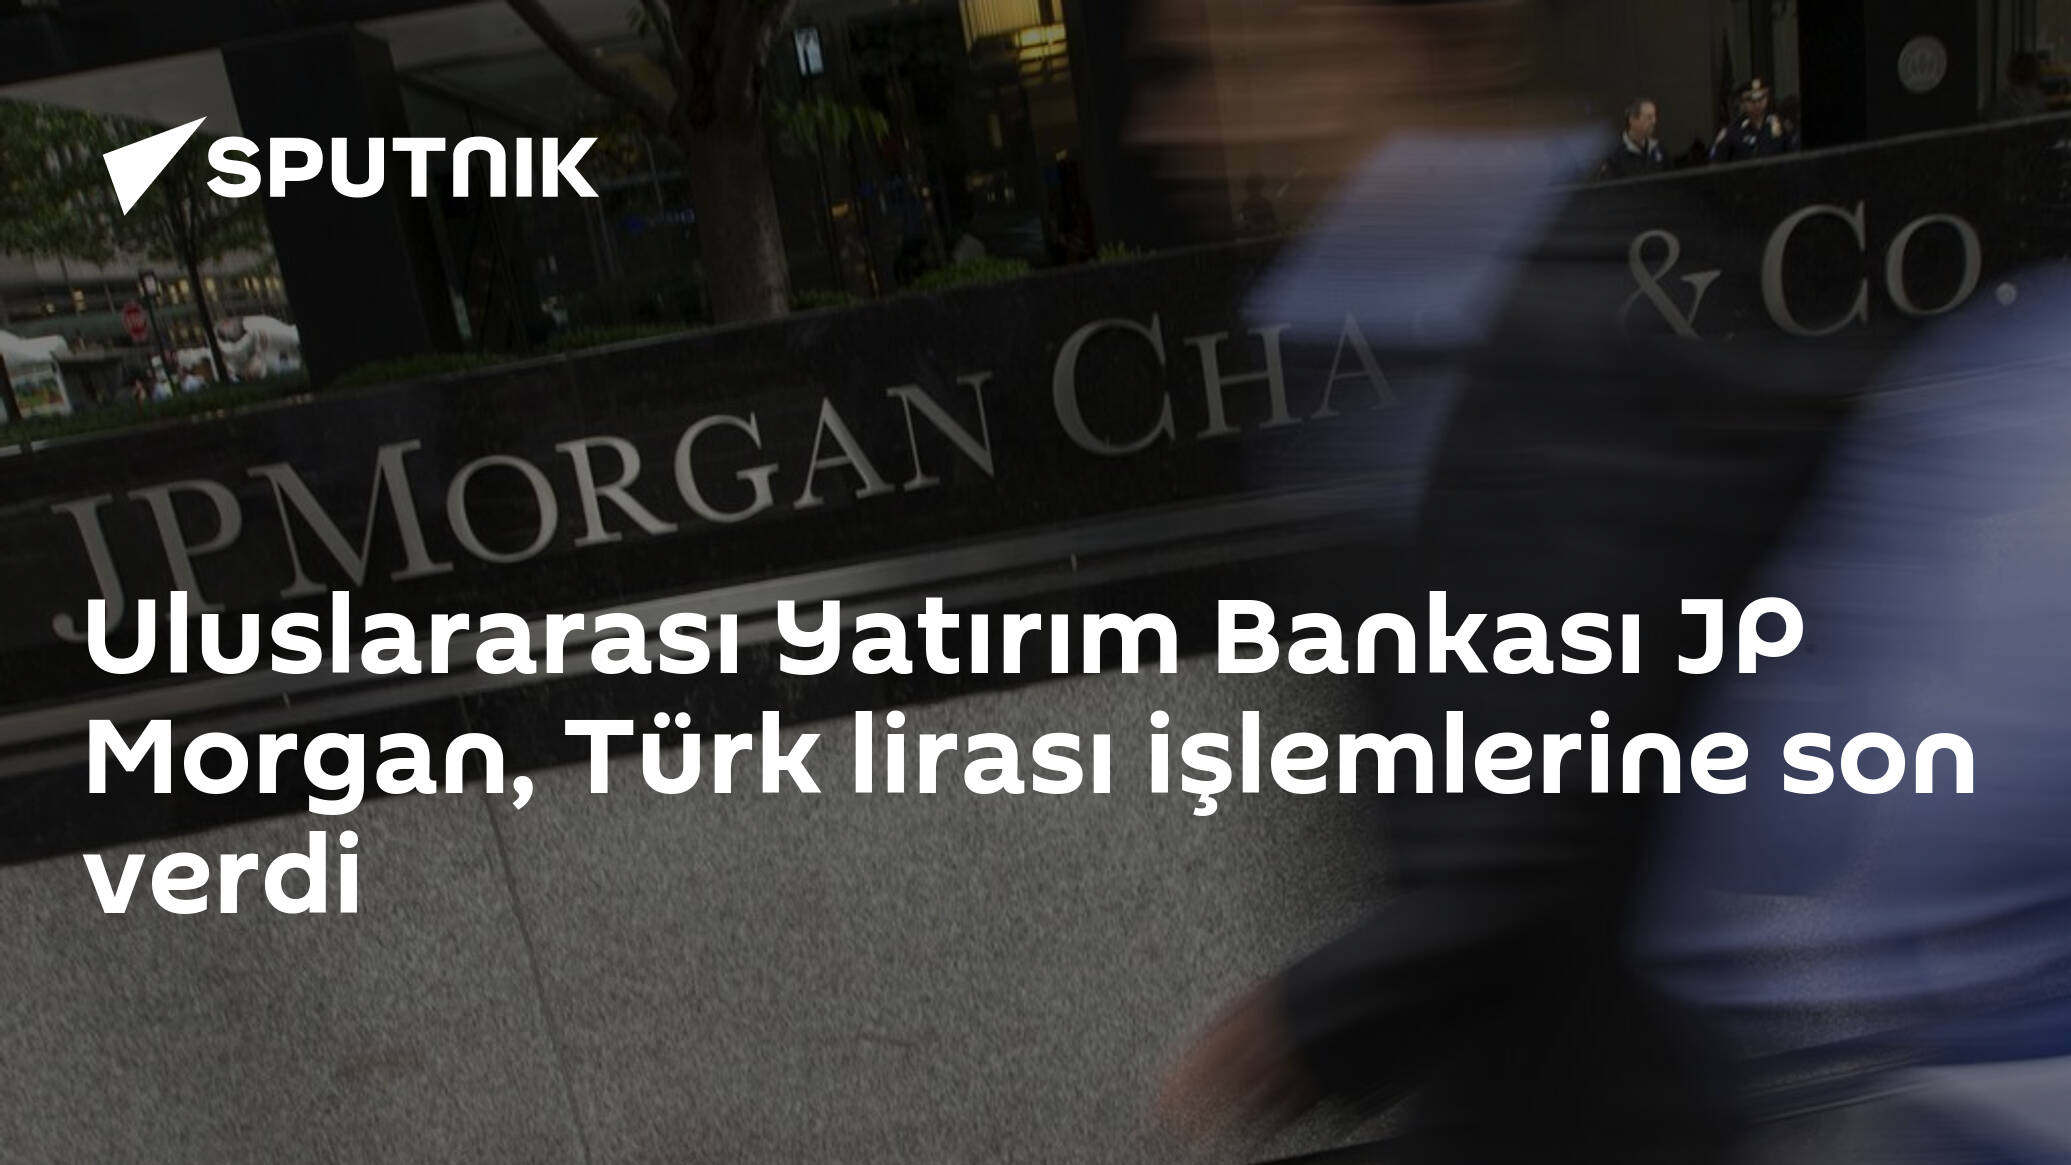 Uluslararası Yatırım Bankası JP Morgan, Türk lirası işlemlerine son verdi